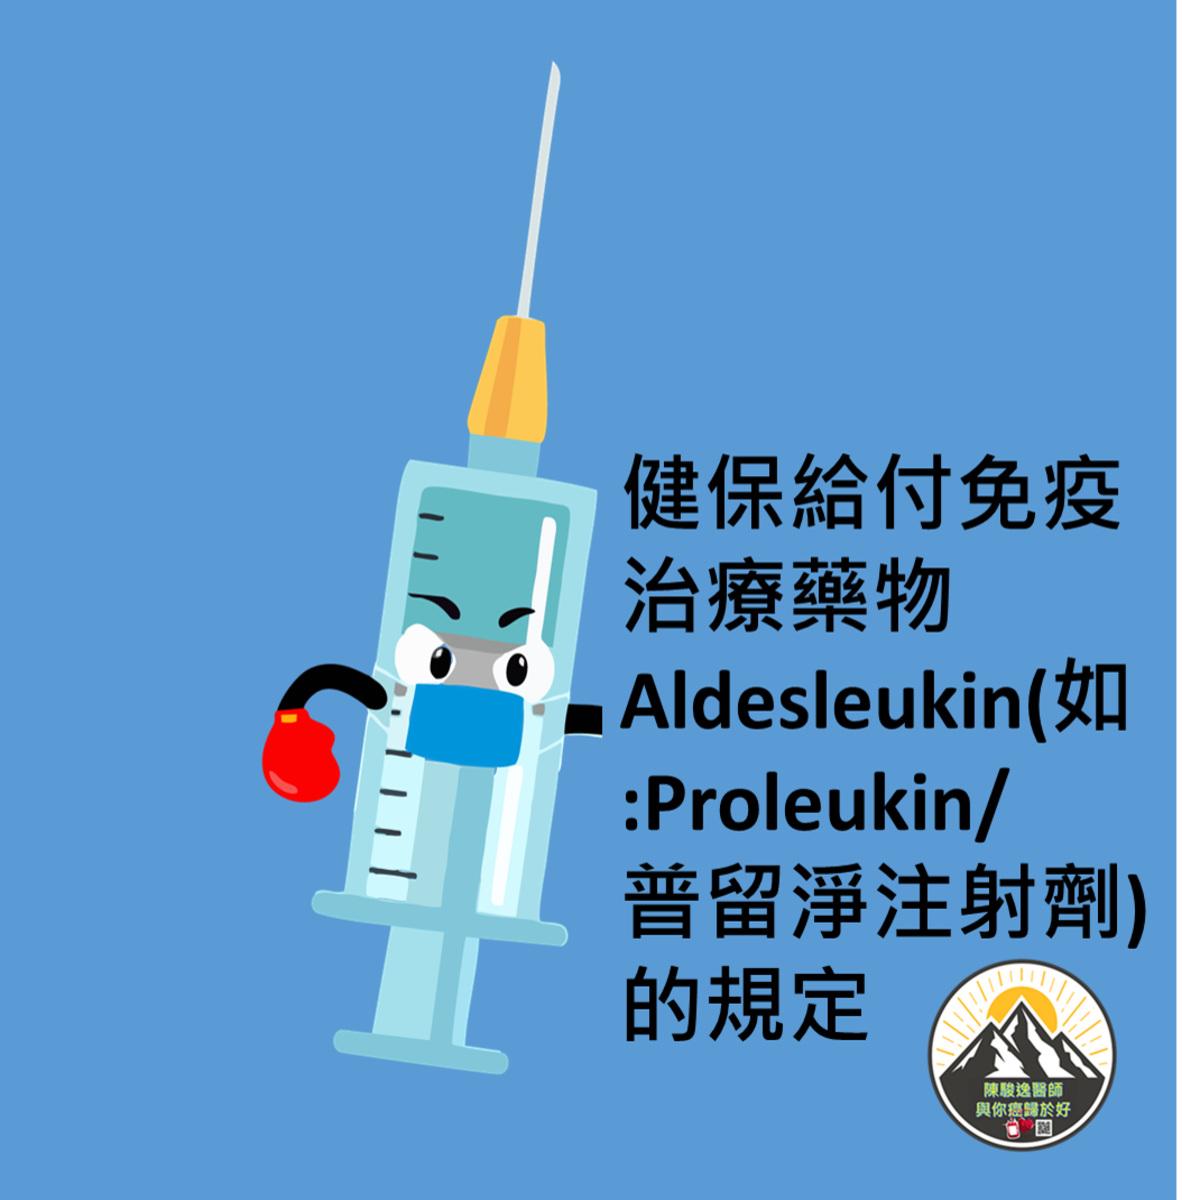 健保給付免疫治療藥物Aldesleukin(如:Proleukin/普留淨注射劑)的規定